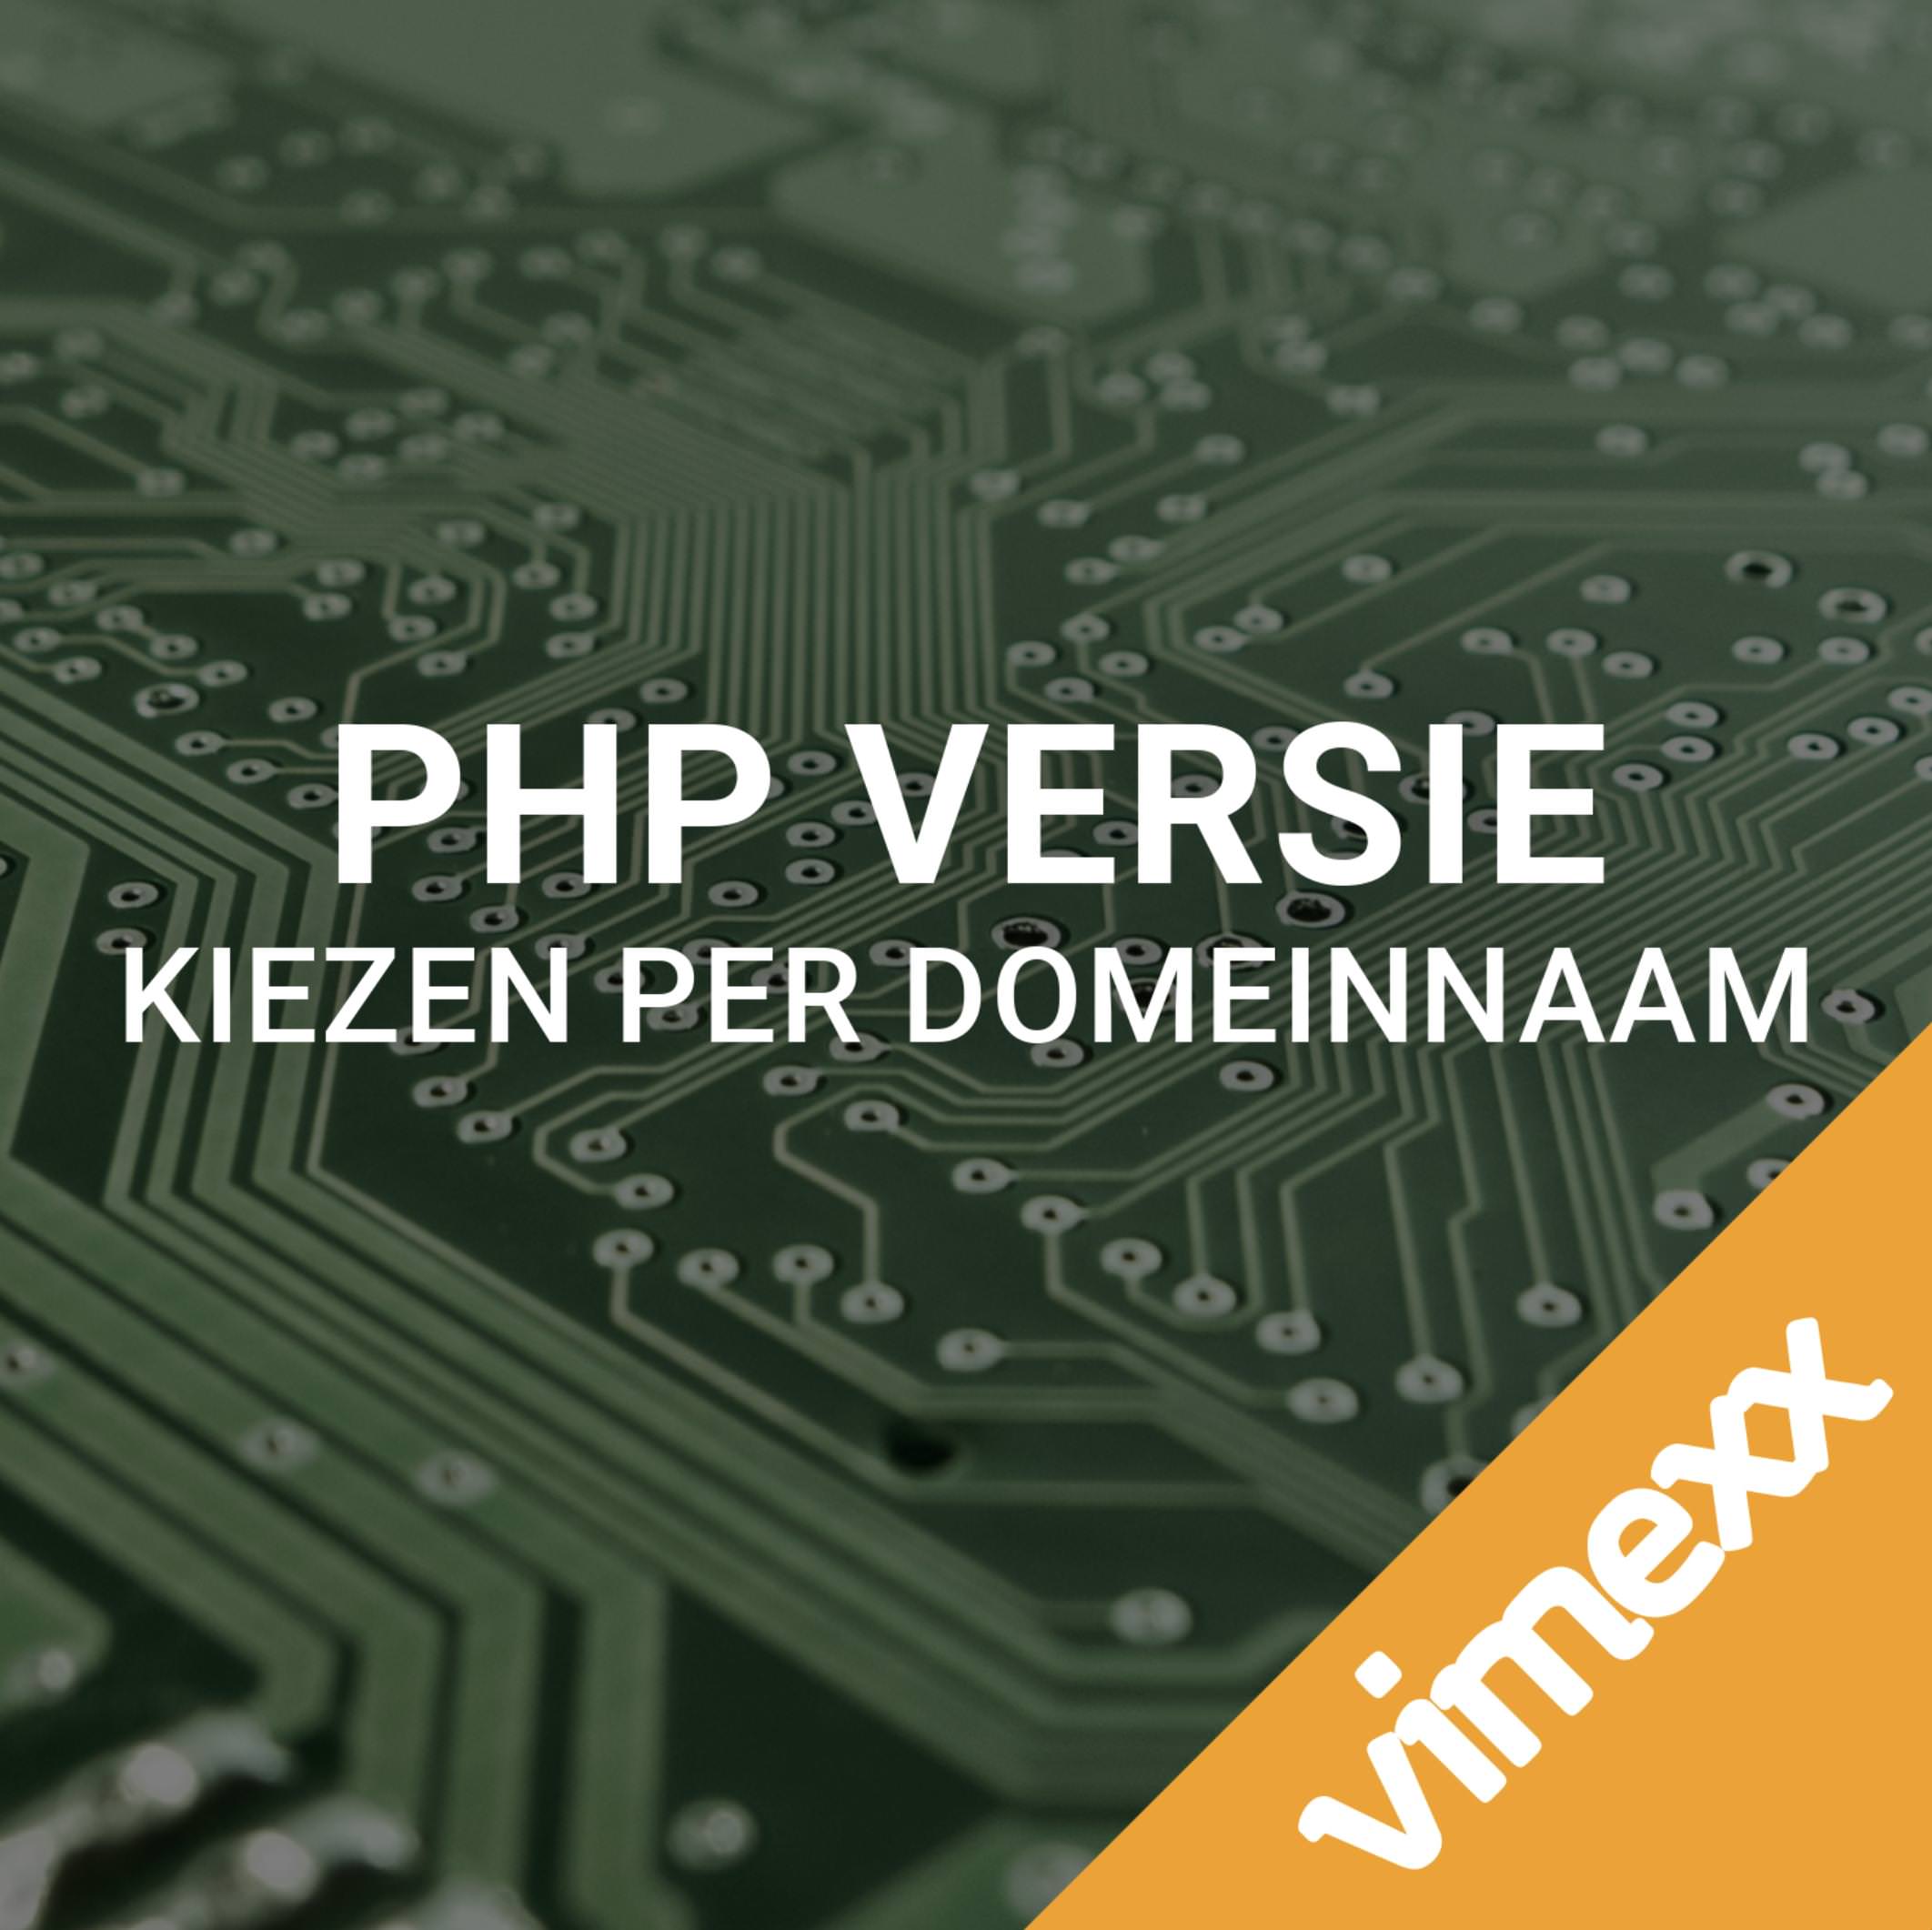 PHP versie per domeinnaam instellen!